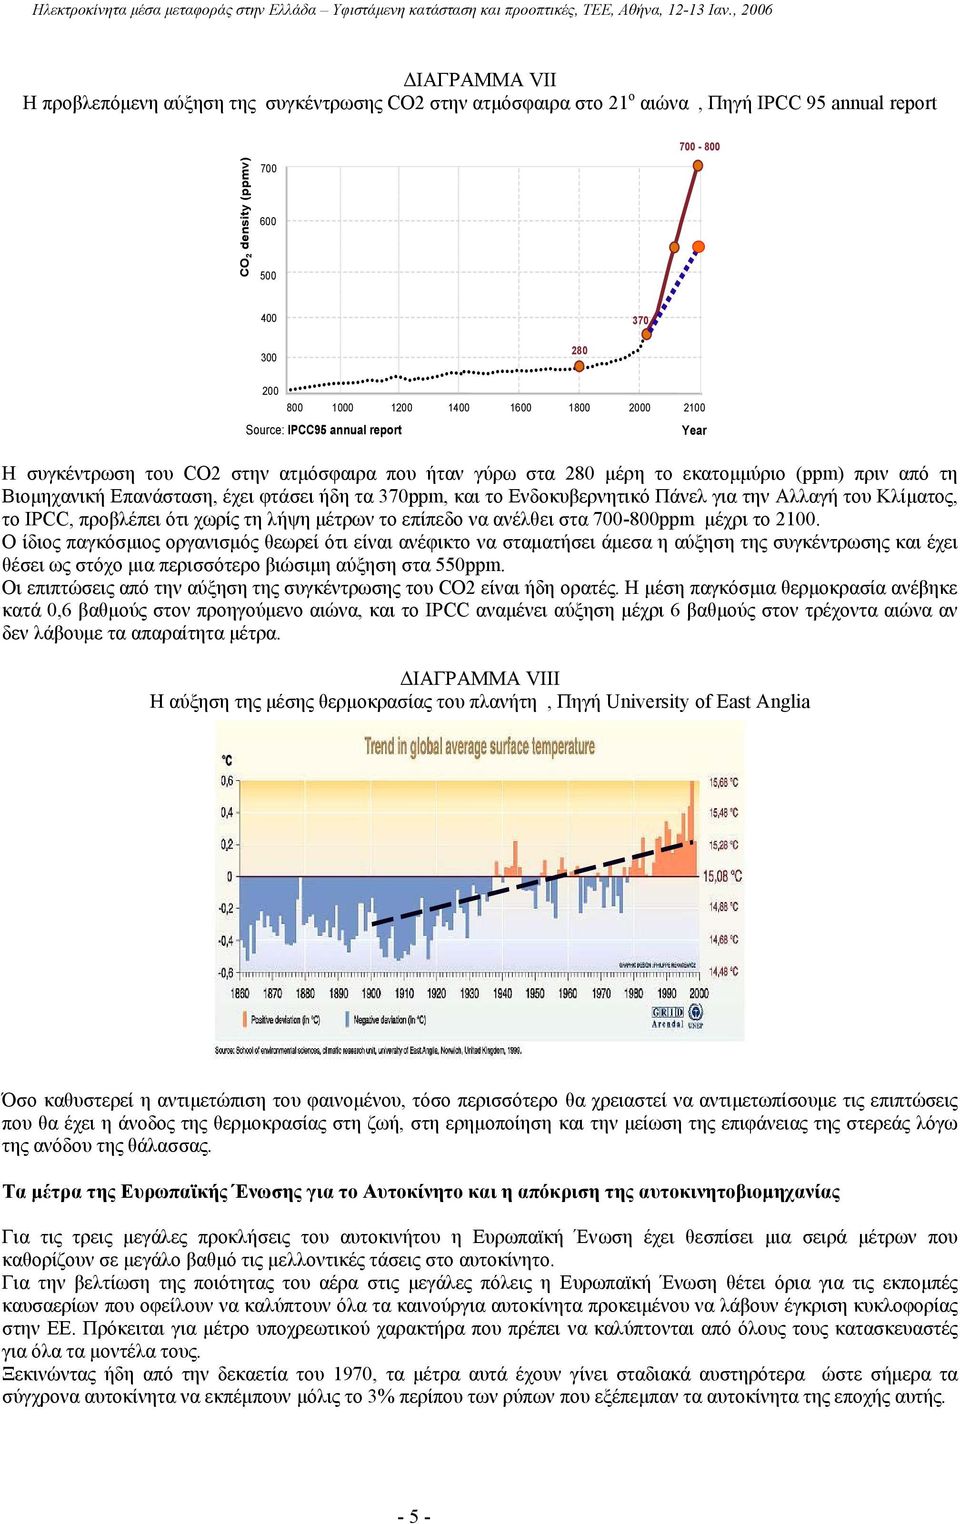 Ενδοκυβερνητικό Πάνελ για την Αλλαγή του Κλίµατος, το IPCC, προβλέπει ότι χωρίς τη λήψη µέτρων το επίπεδο να ανέλθει στα 700-800ppm µέχρι το 2100.